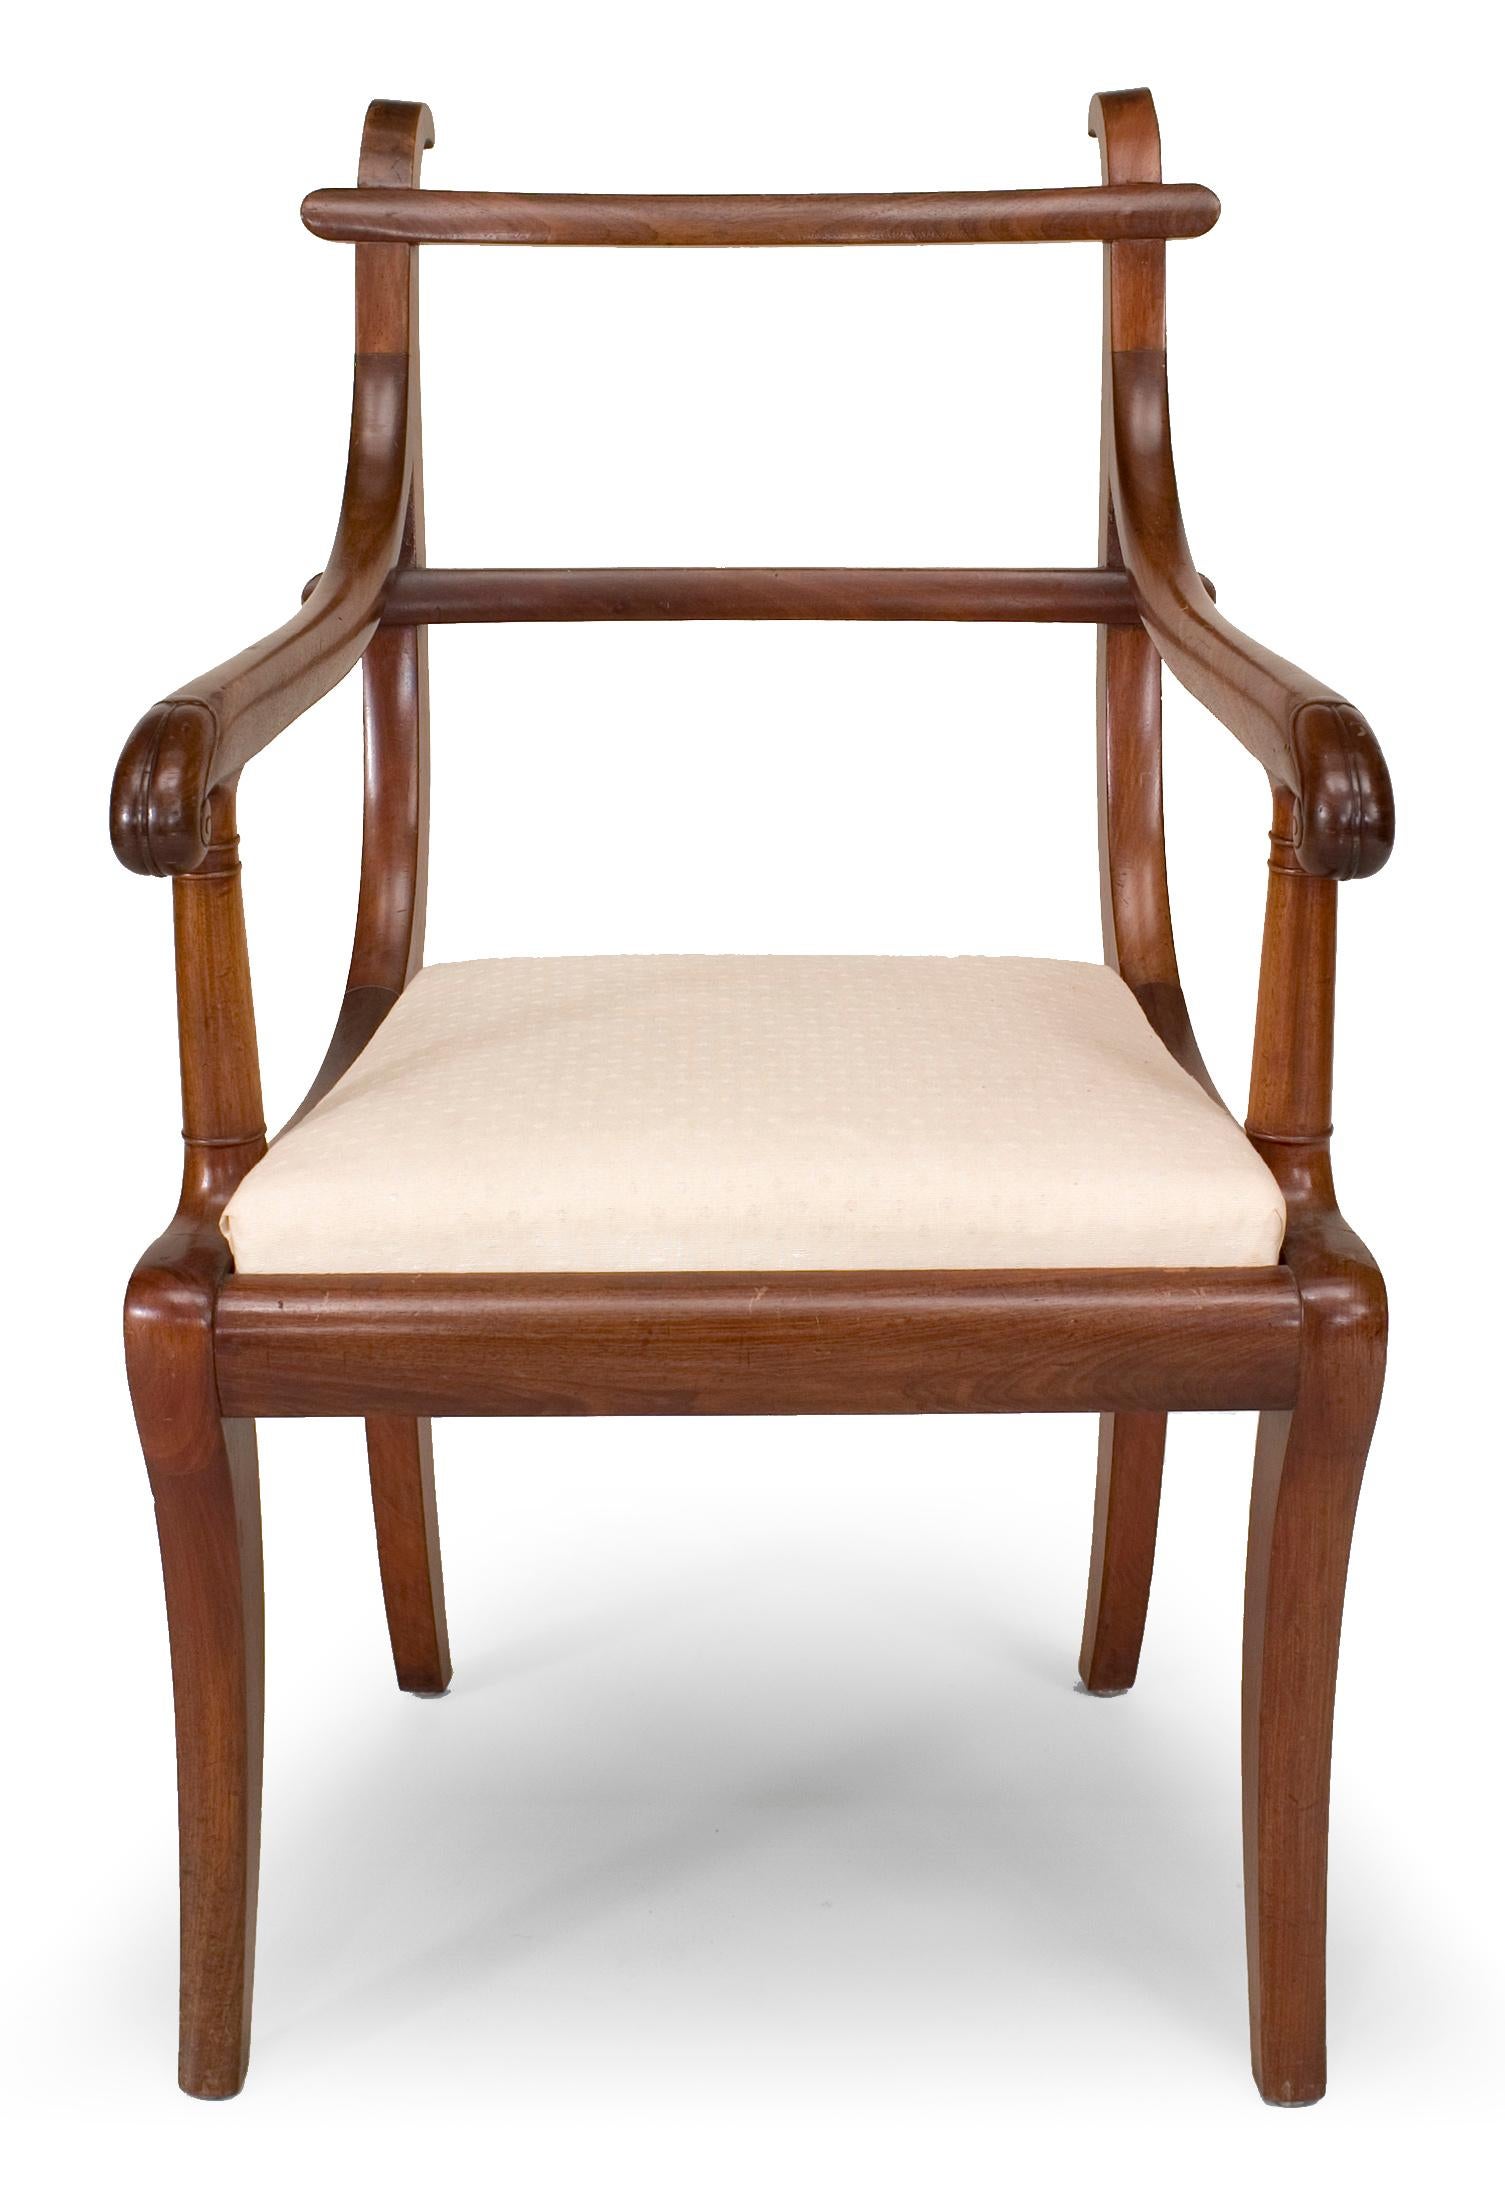 Paire de fauteuils de style Régence anglaise (19e siècle) en acajou de province à dossier en échelle et assise à glissière.